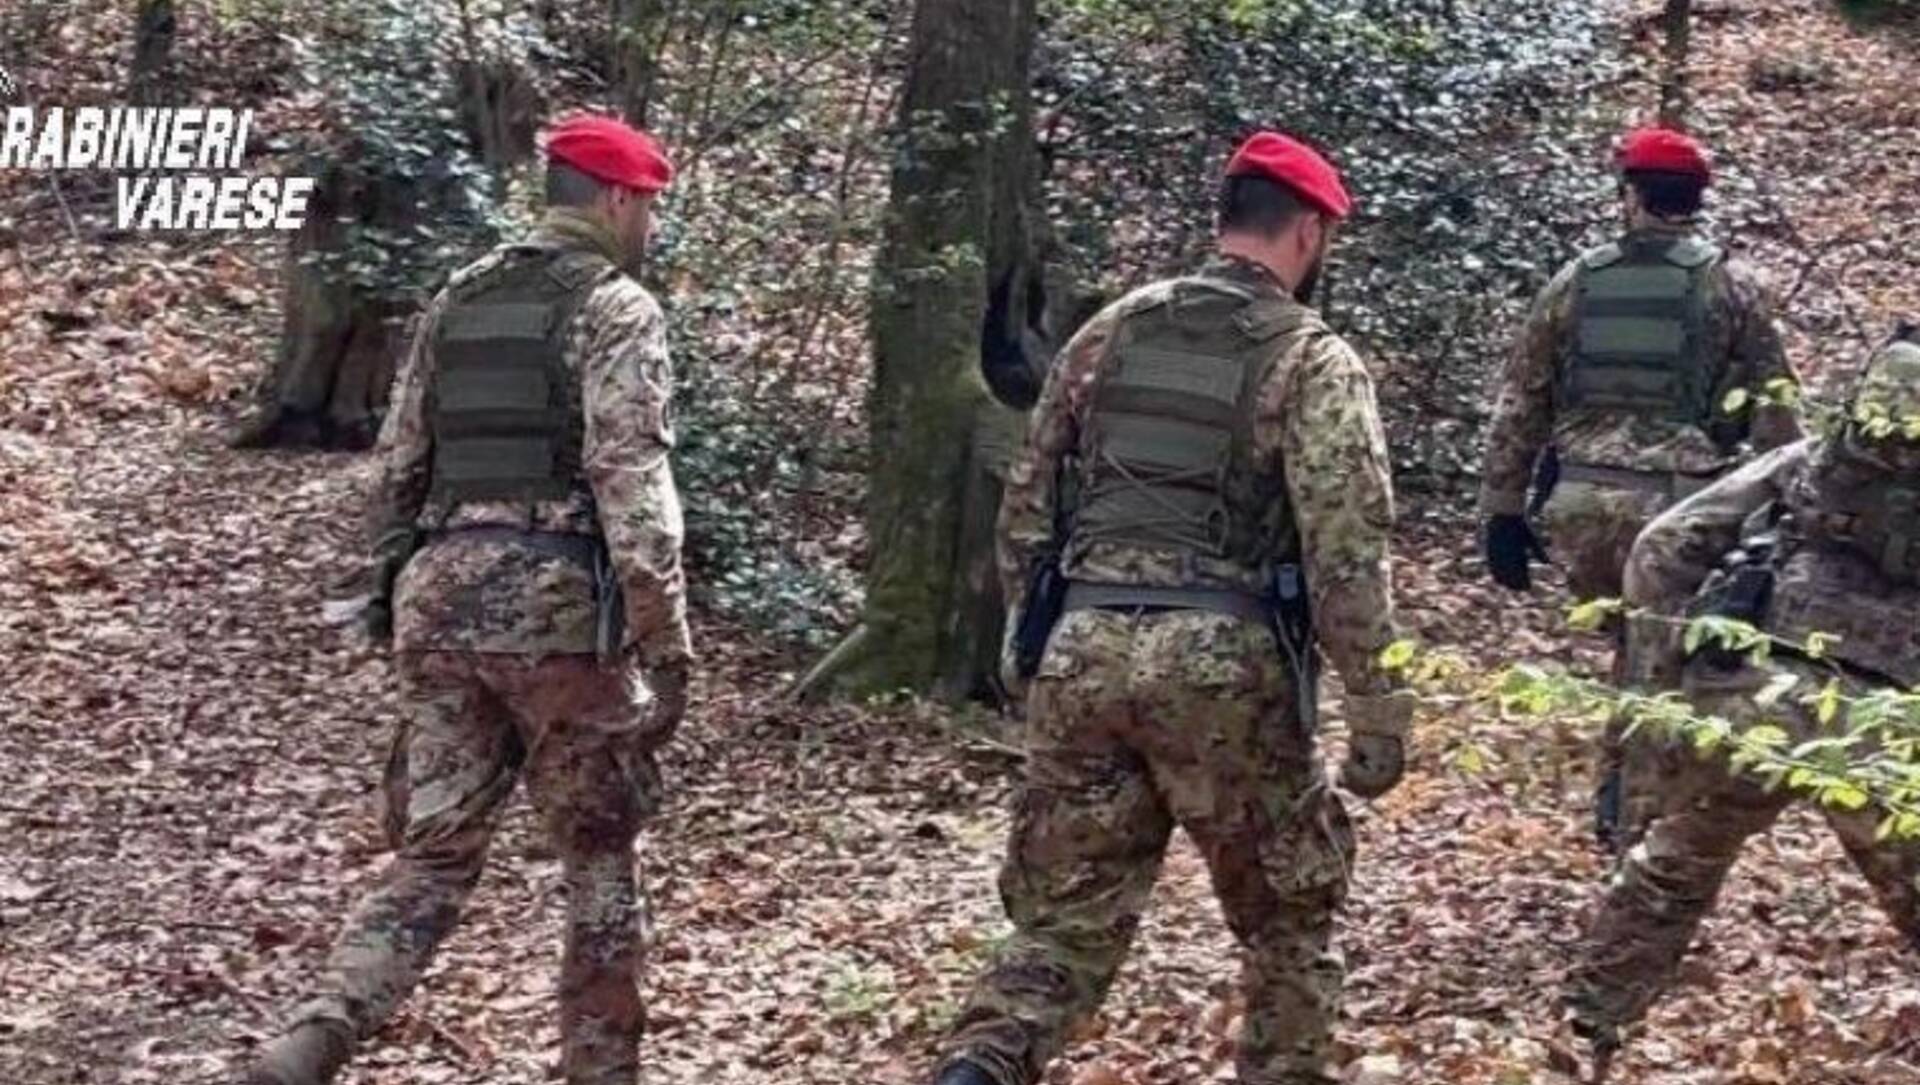 Squadroni carabinieri cacciatori nei boschi per contrastare lo spaccio nel Varesotto